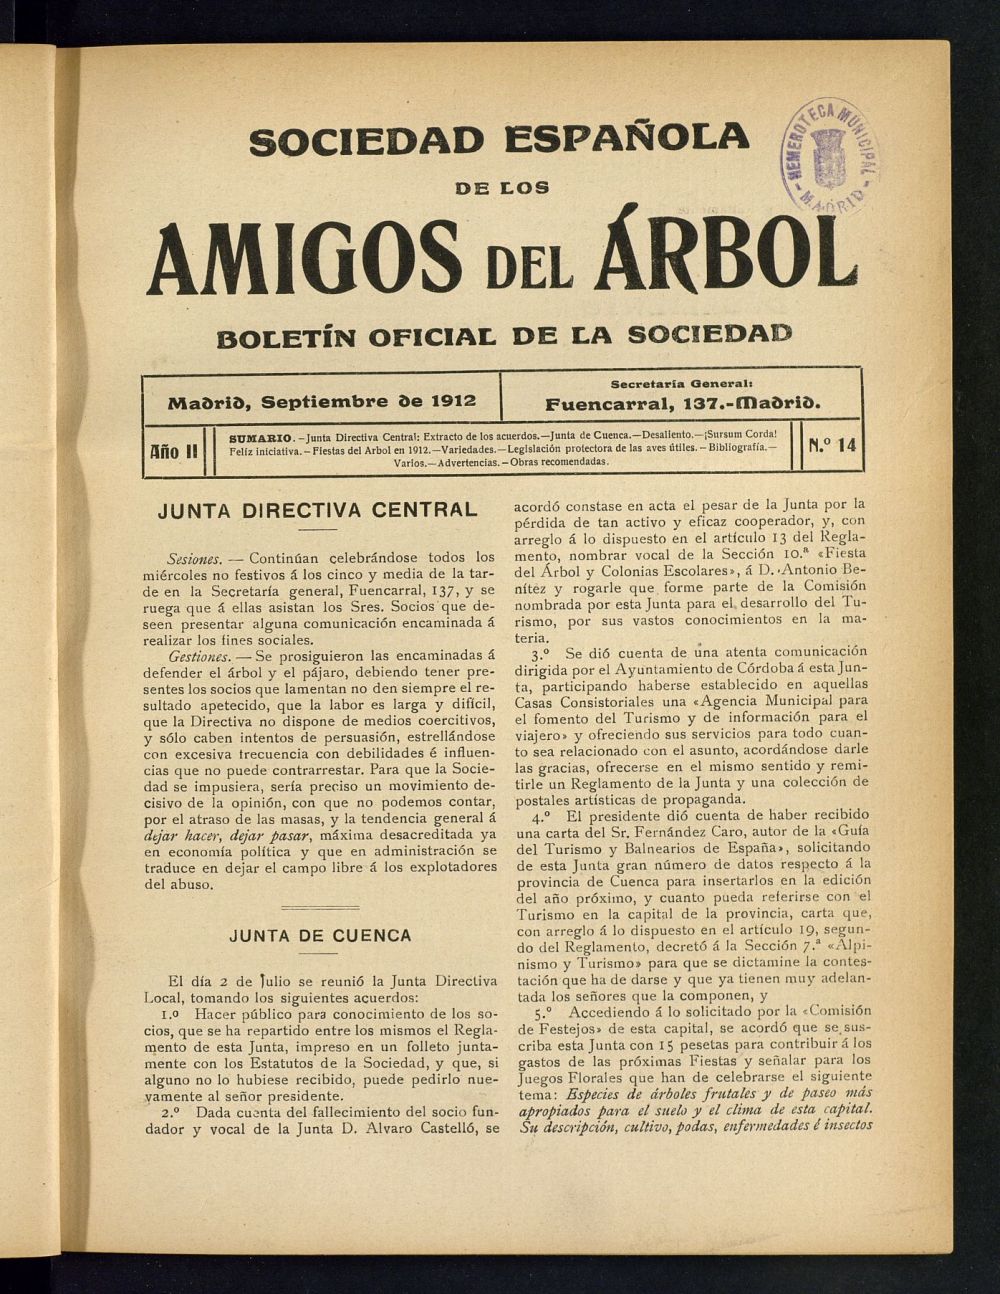 Boletn Comisin organizadora de la Sociedad Espaola de los amigos del rbol de septiembre de 1912